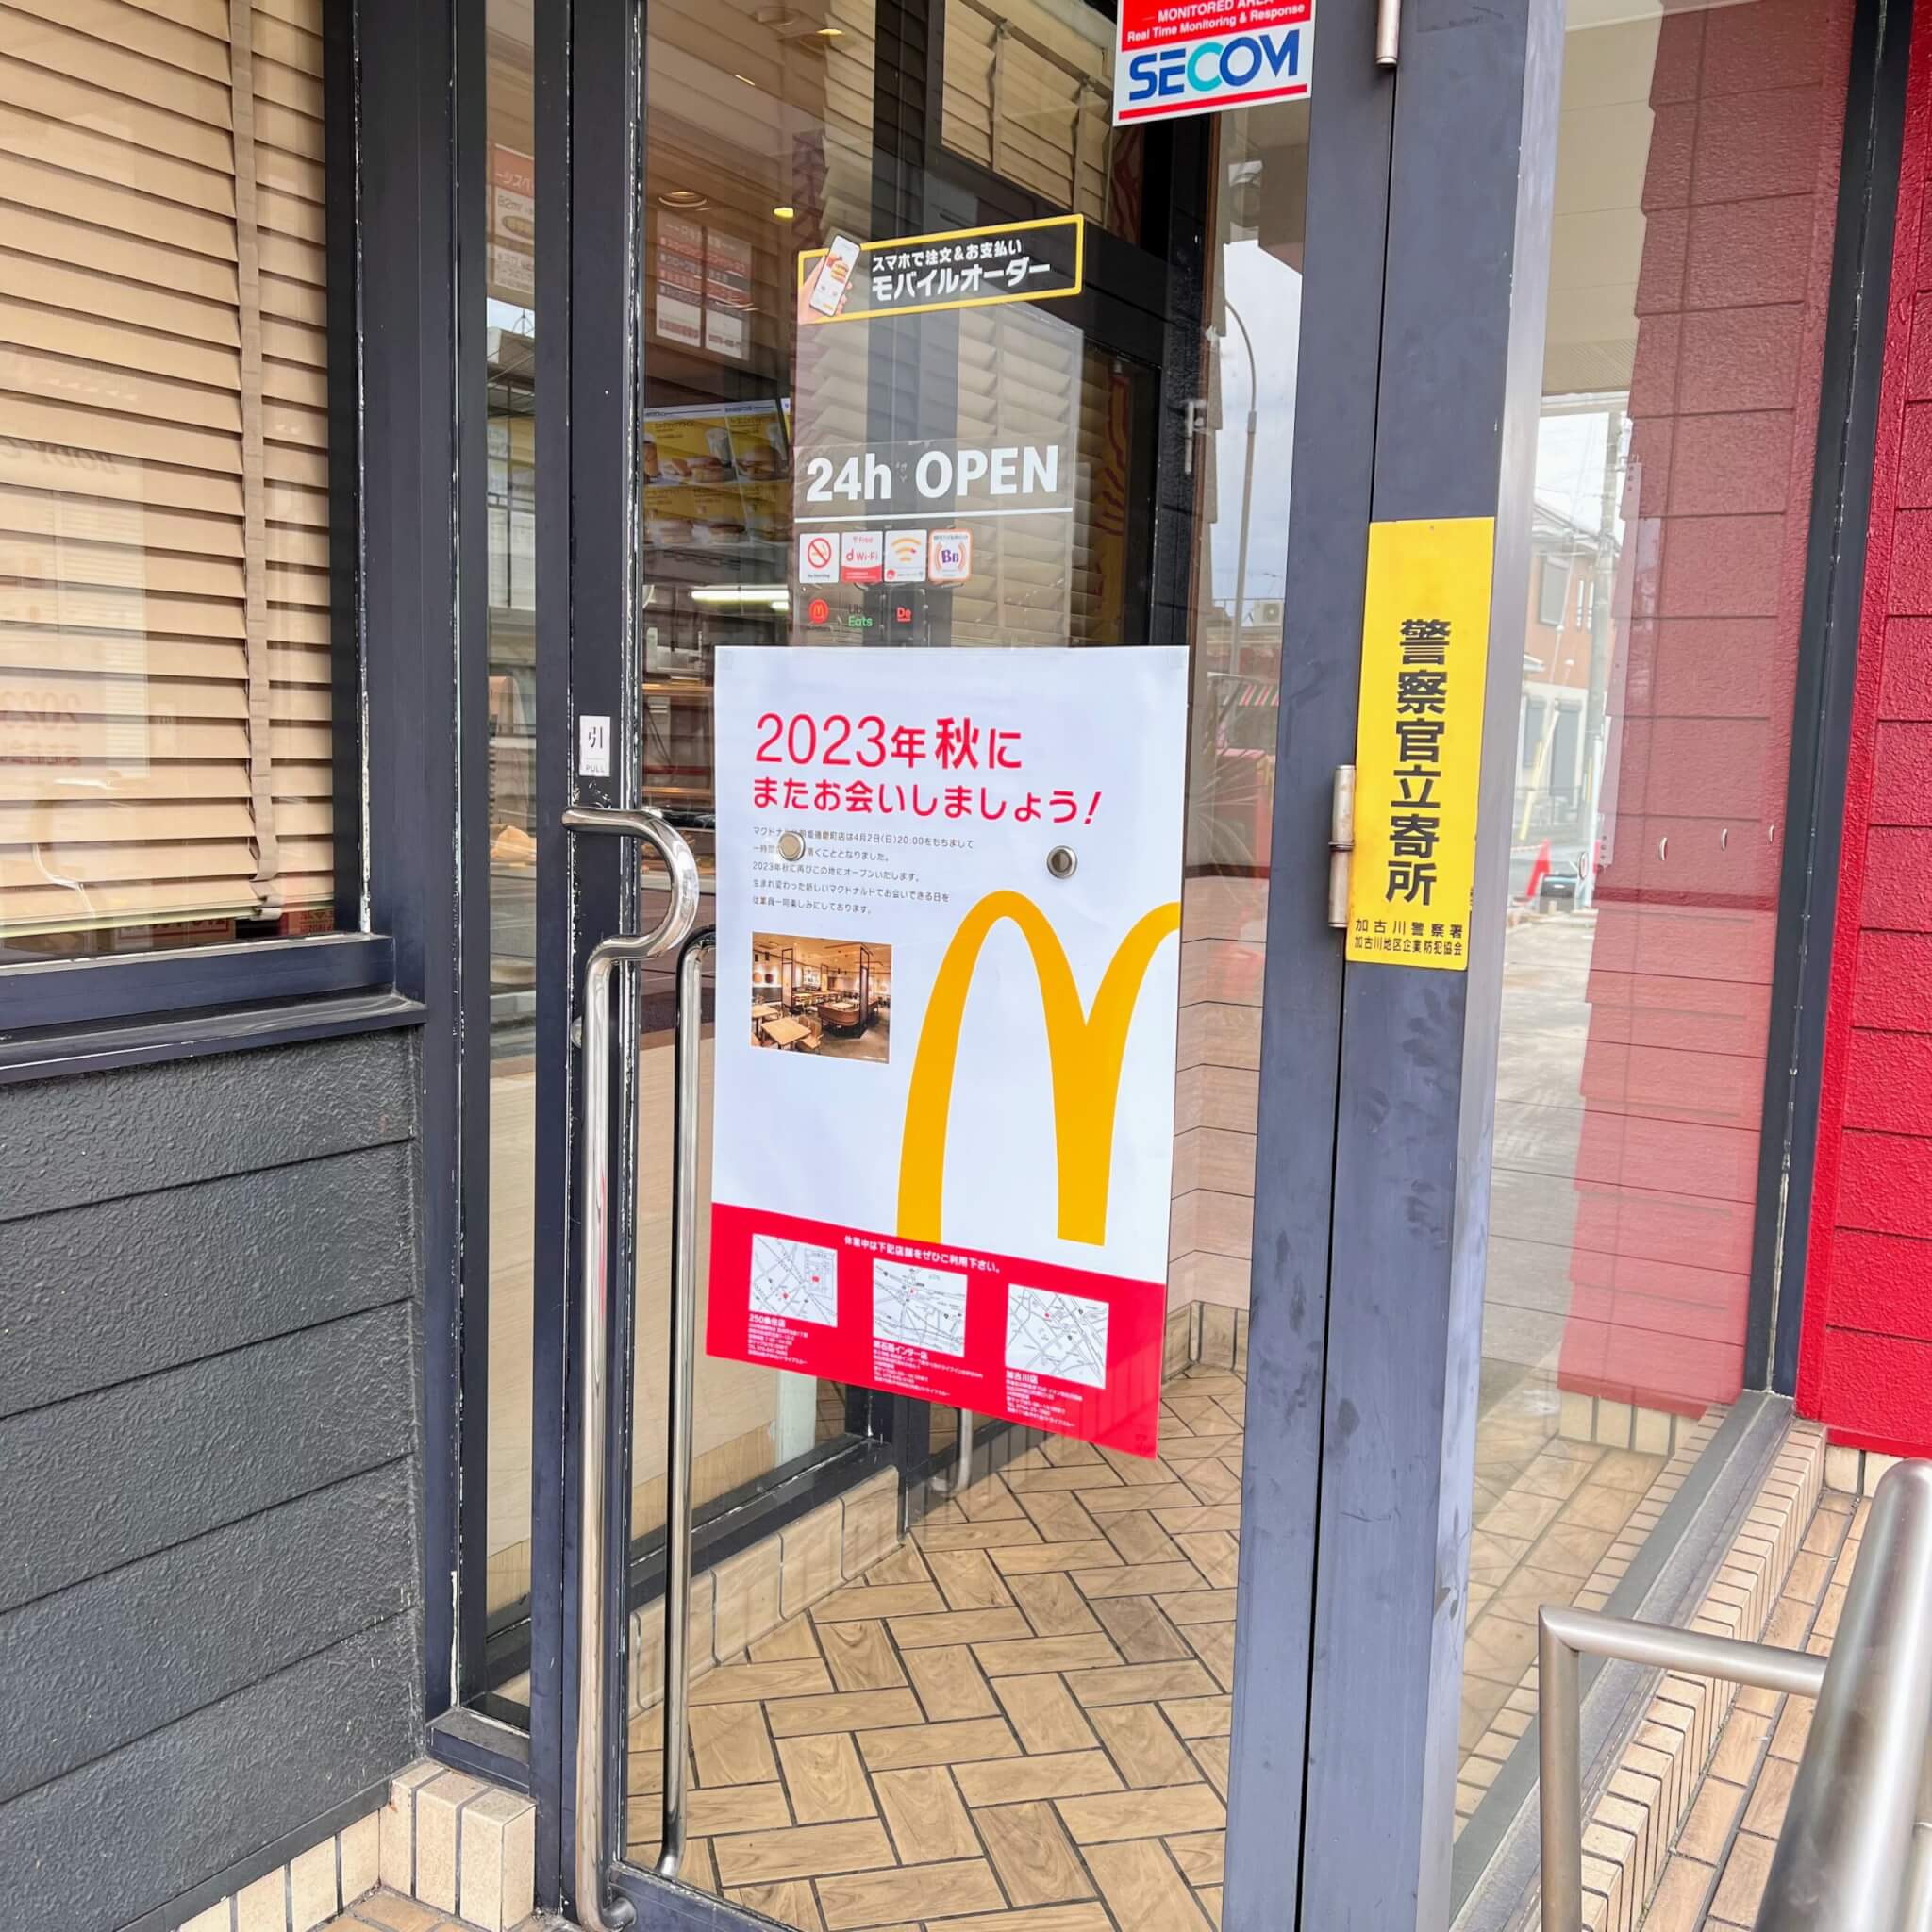 マクドナルド明姫播磨町店の入口に貼られた一時閉店のお知らせ